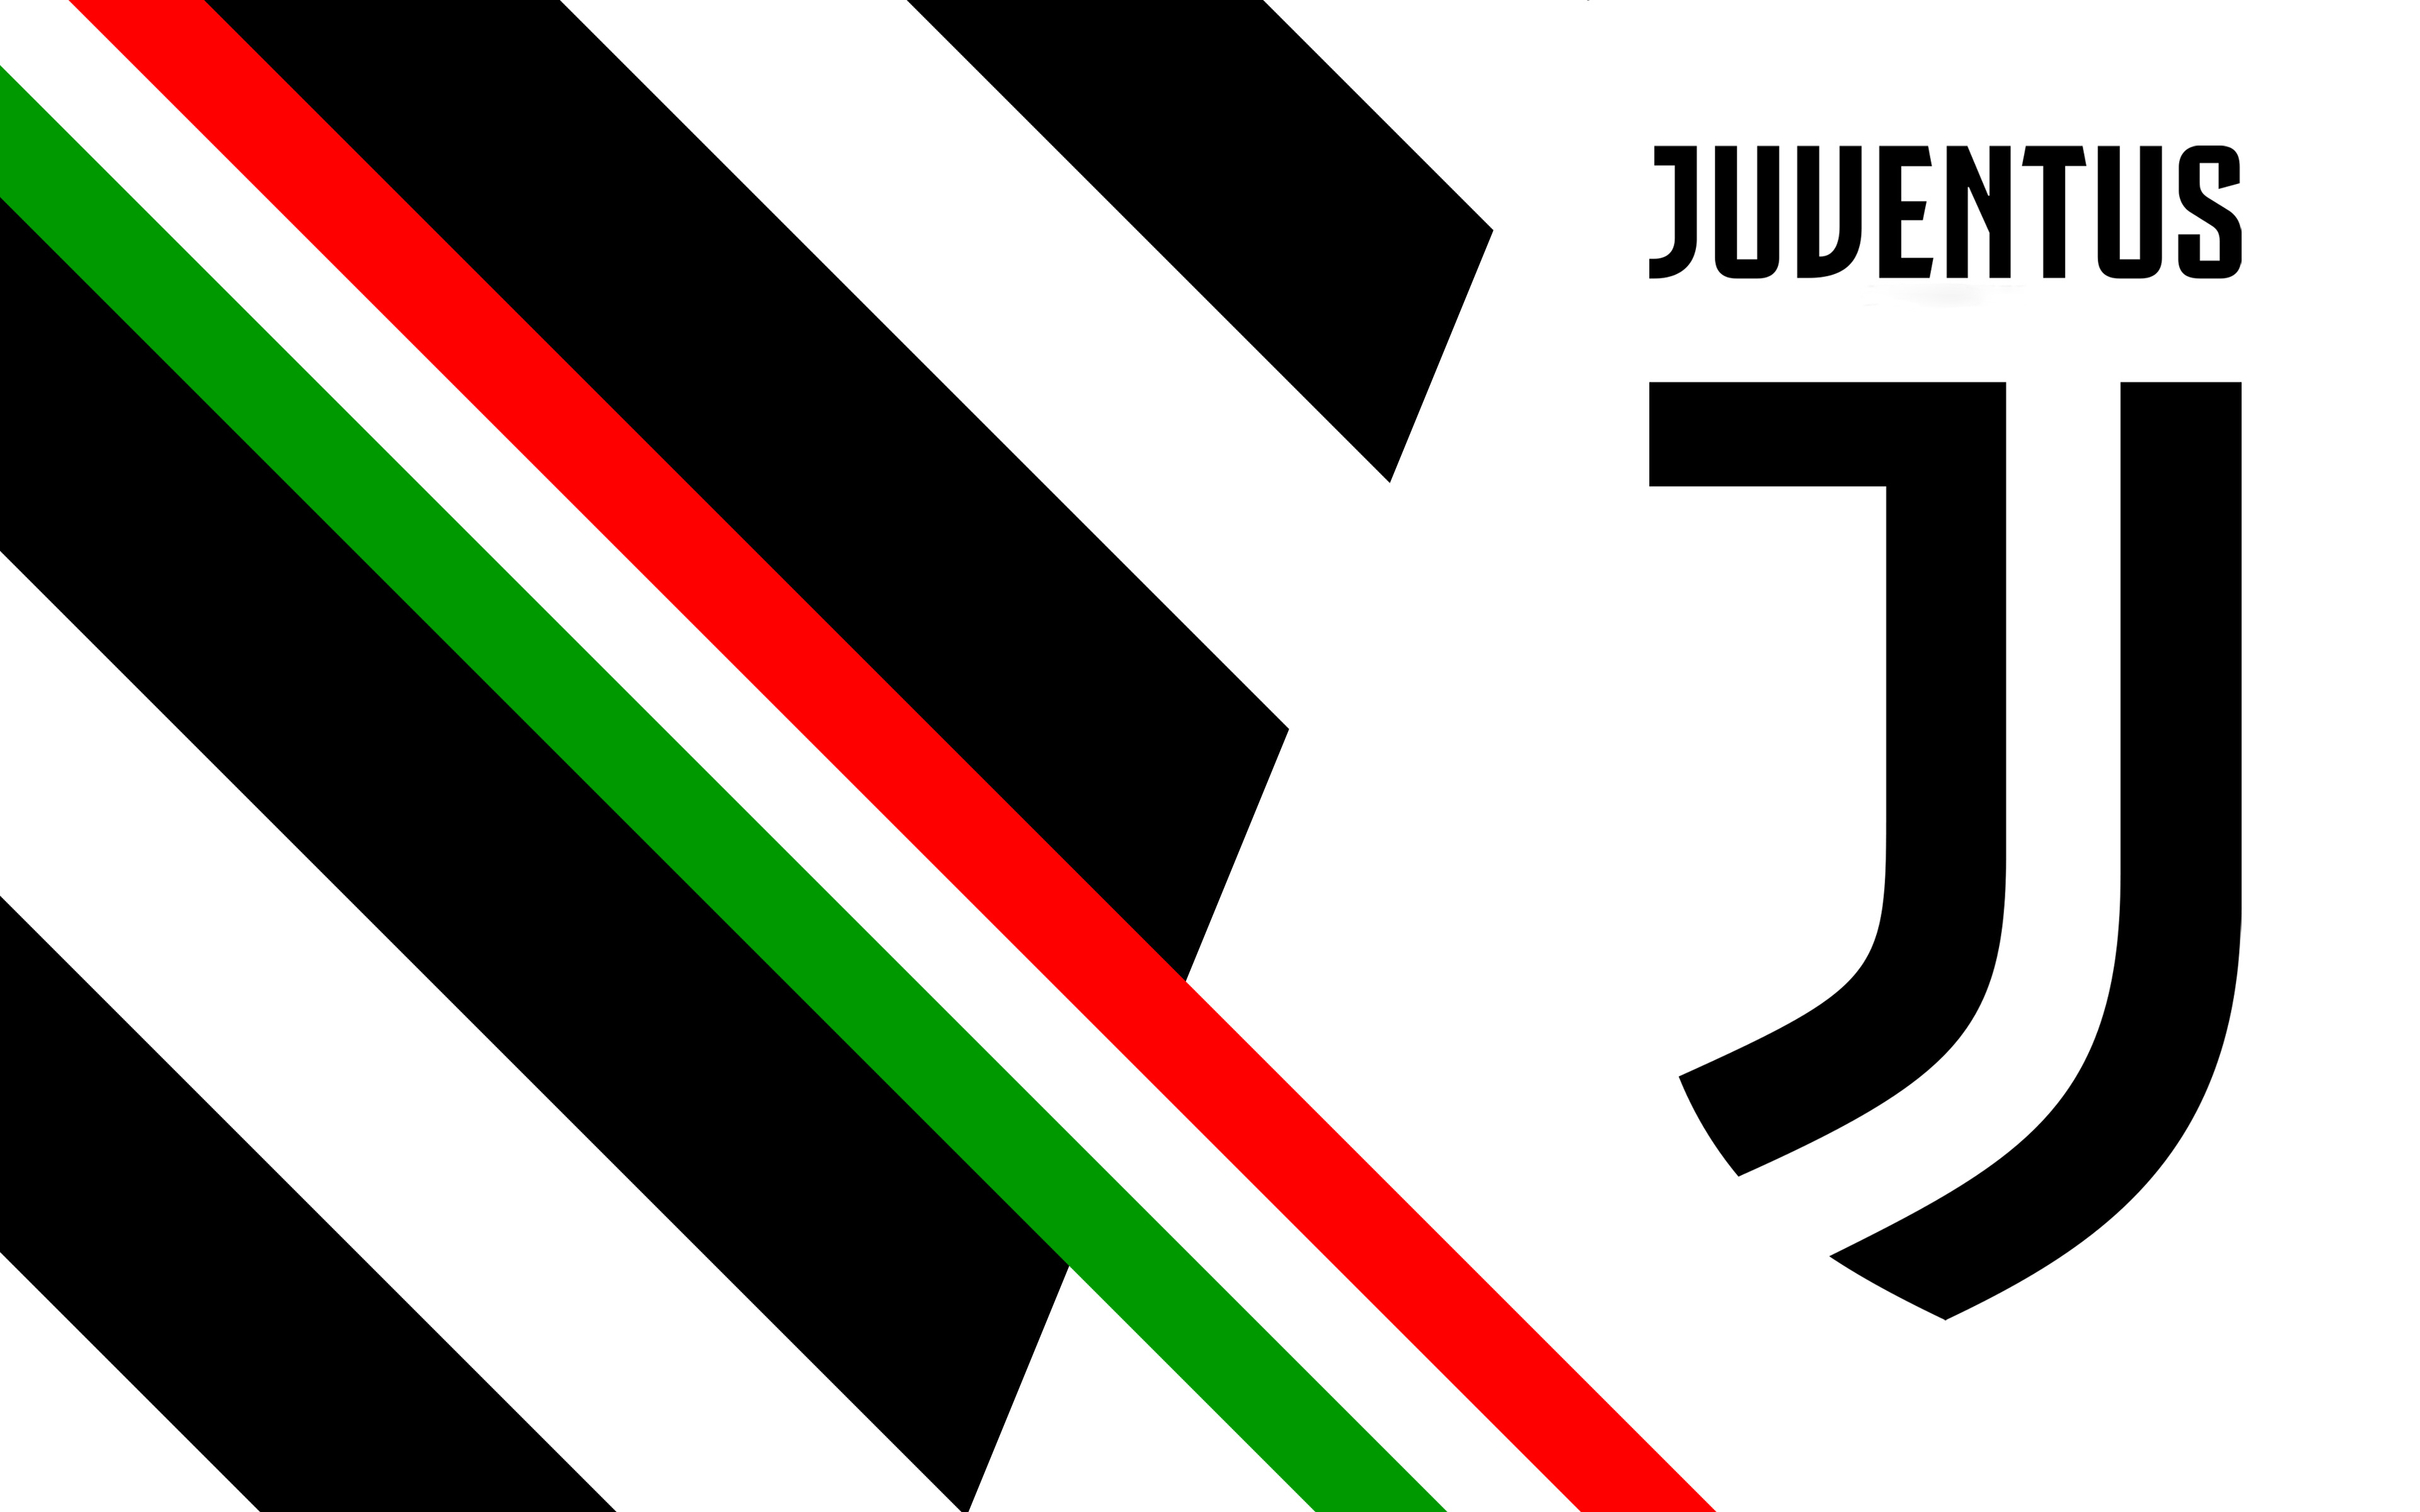 juventus f c, sports, logo, soccer